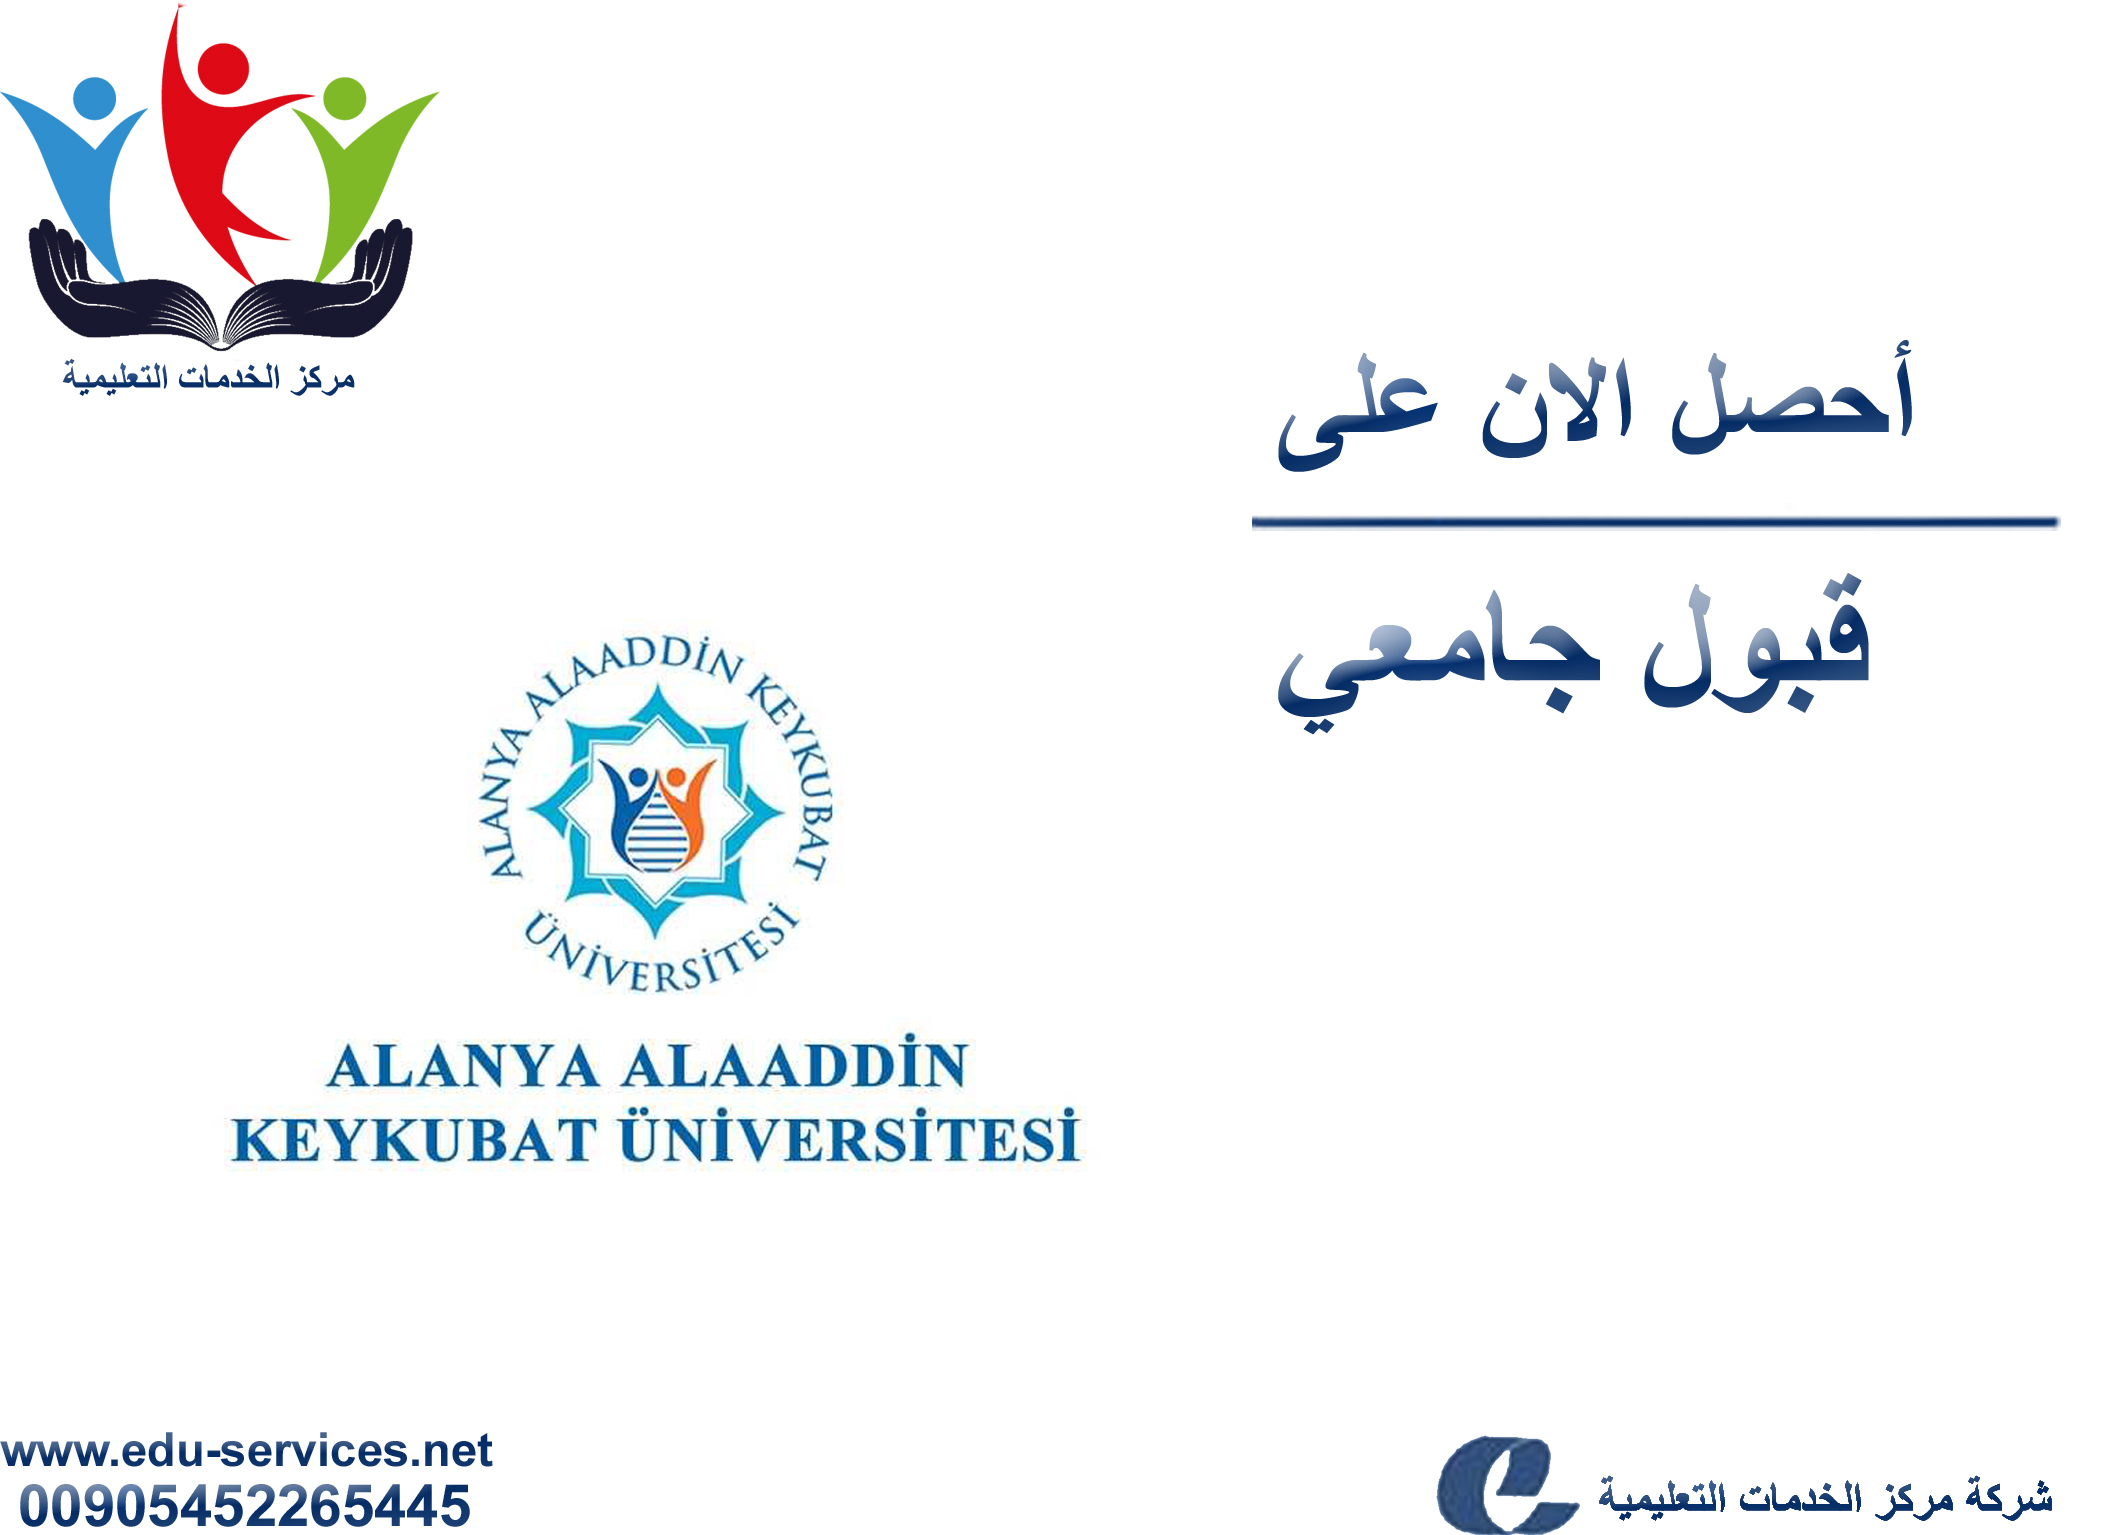 افتتاح التسجيل في جامعة الانيا علاء الدين للعام 2019-2020